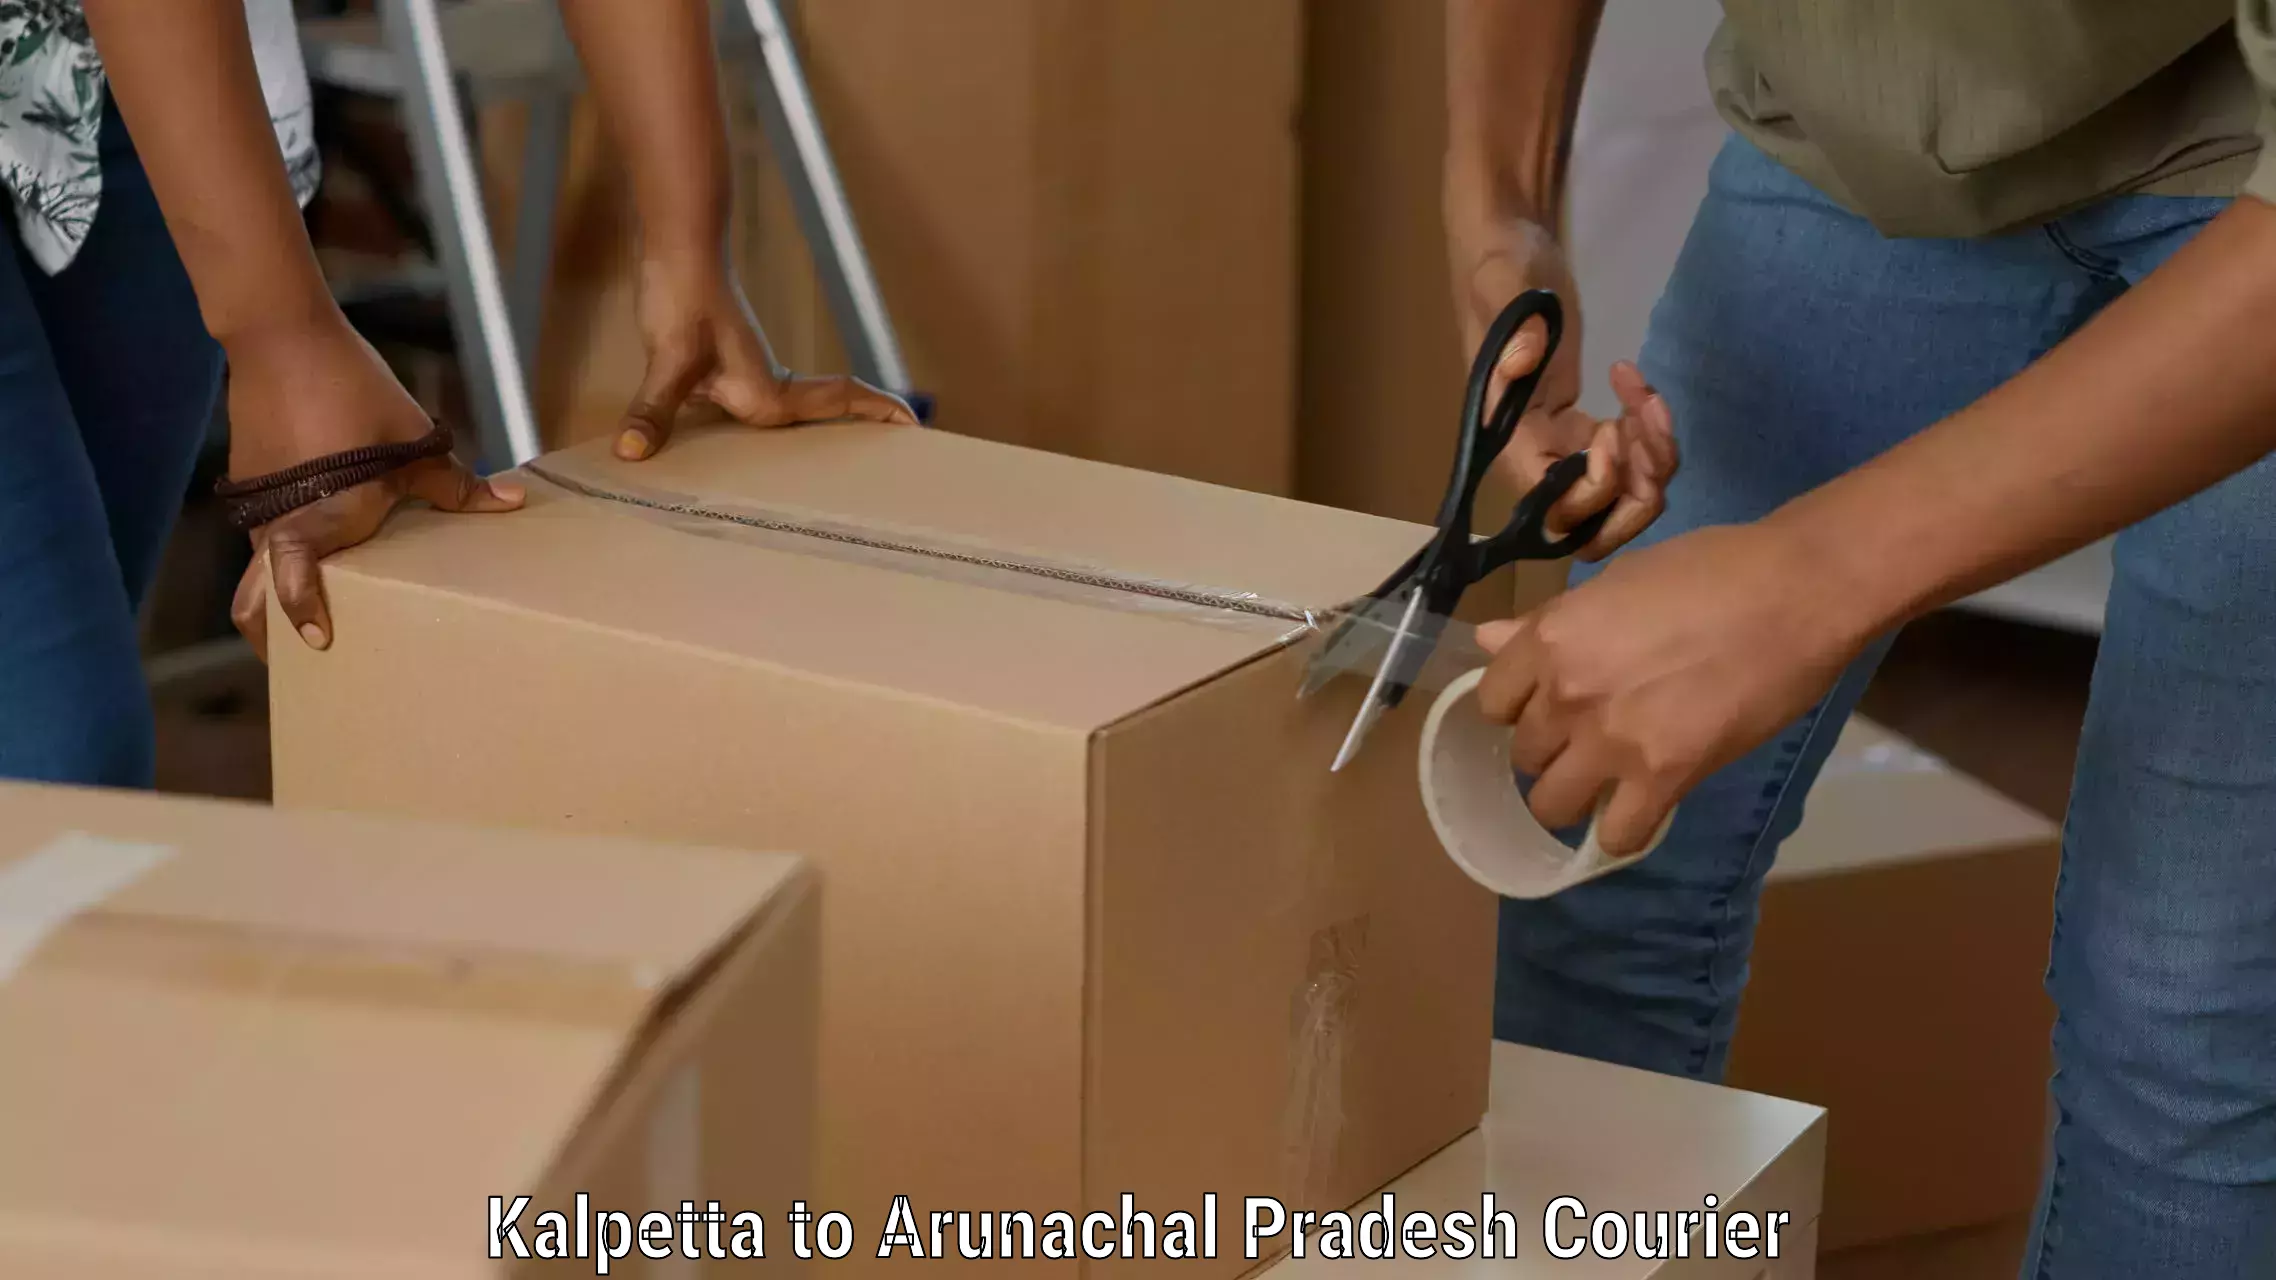 Budget-friendly shipping in Kalpetta to Arunachal Pradesh